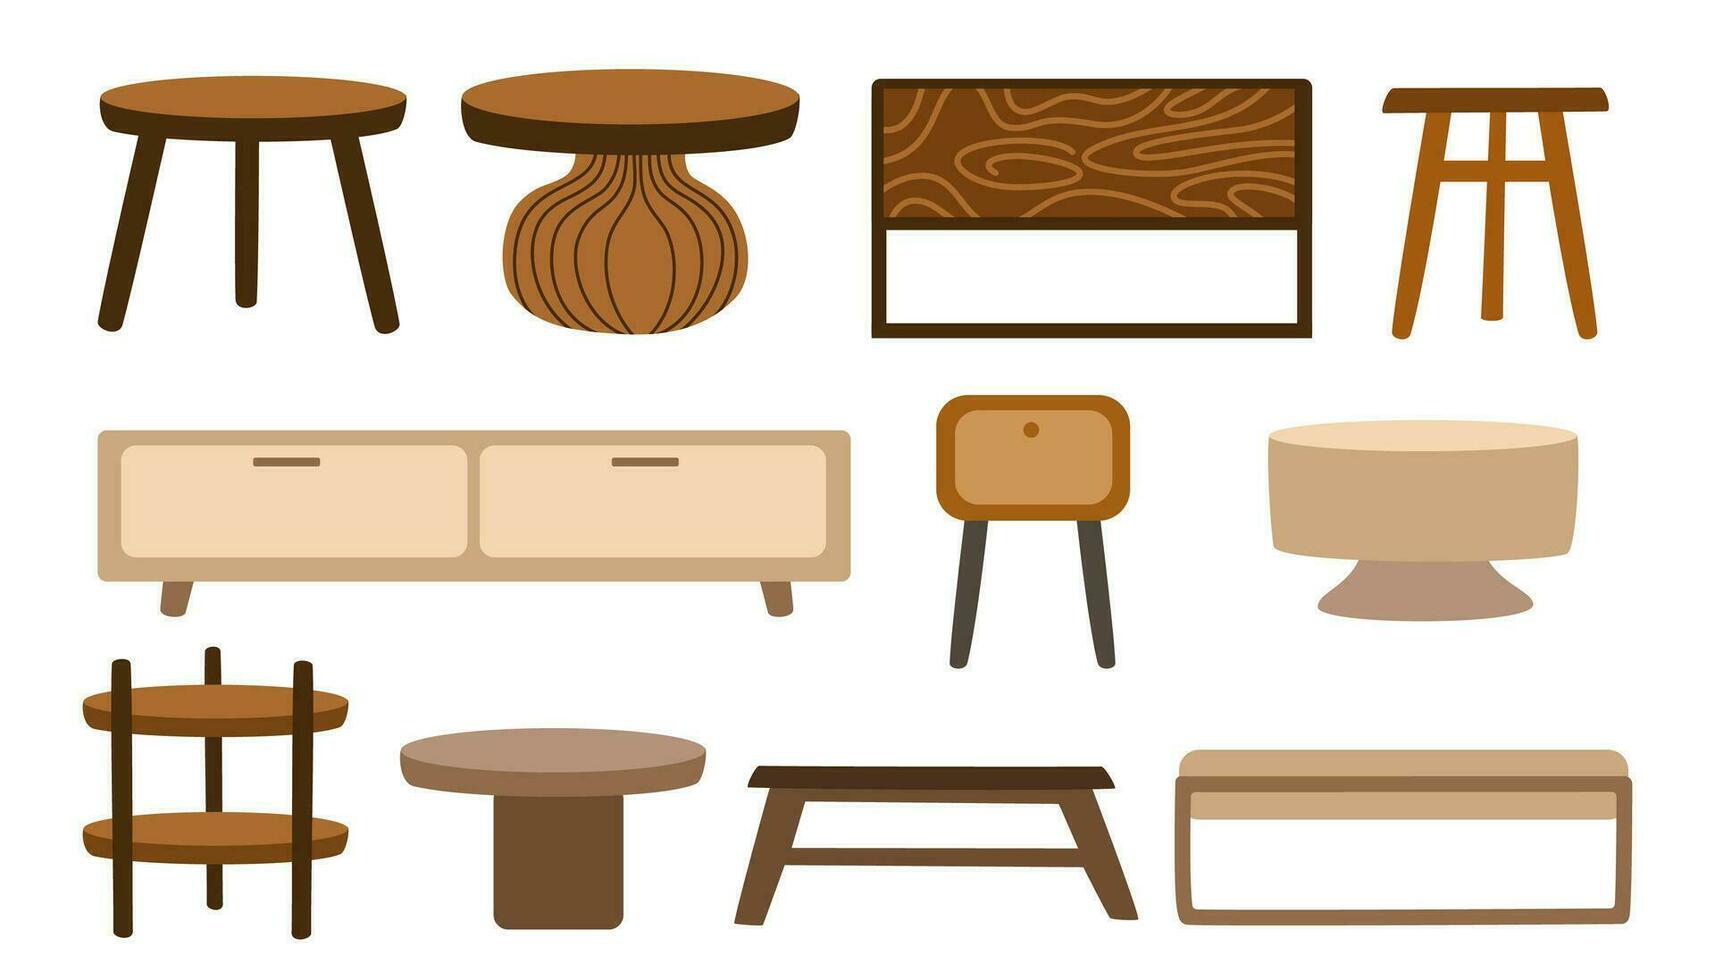 koffie tafels. interieur ontwerp meubilair voor huis en leven kamer. reeks van tafels in Scandinavisch stijl. vector illustratie